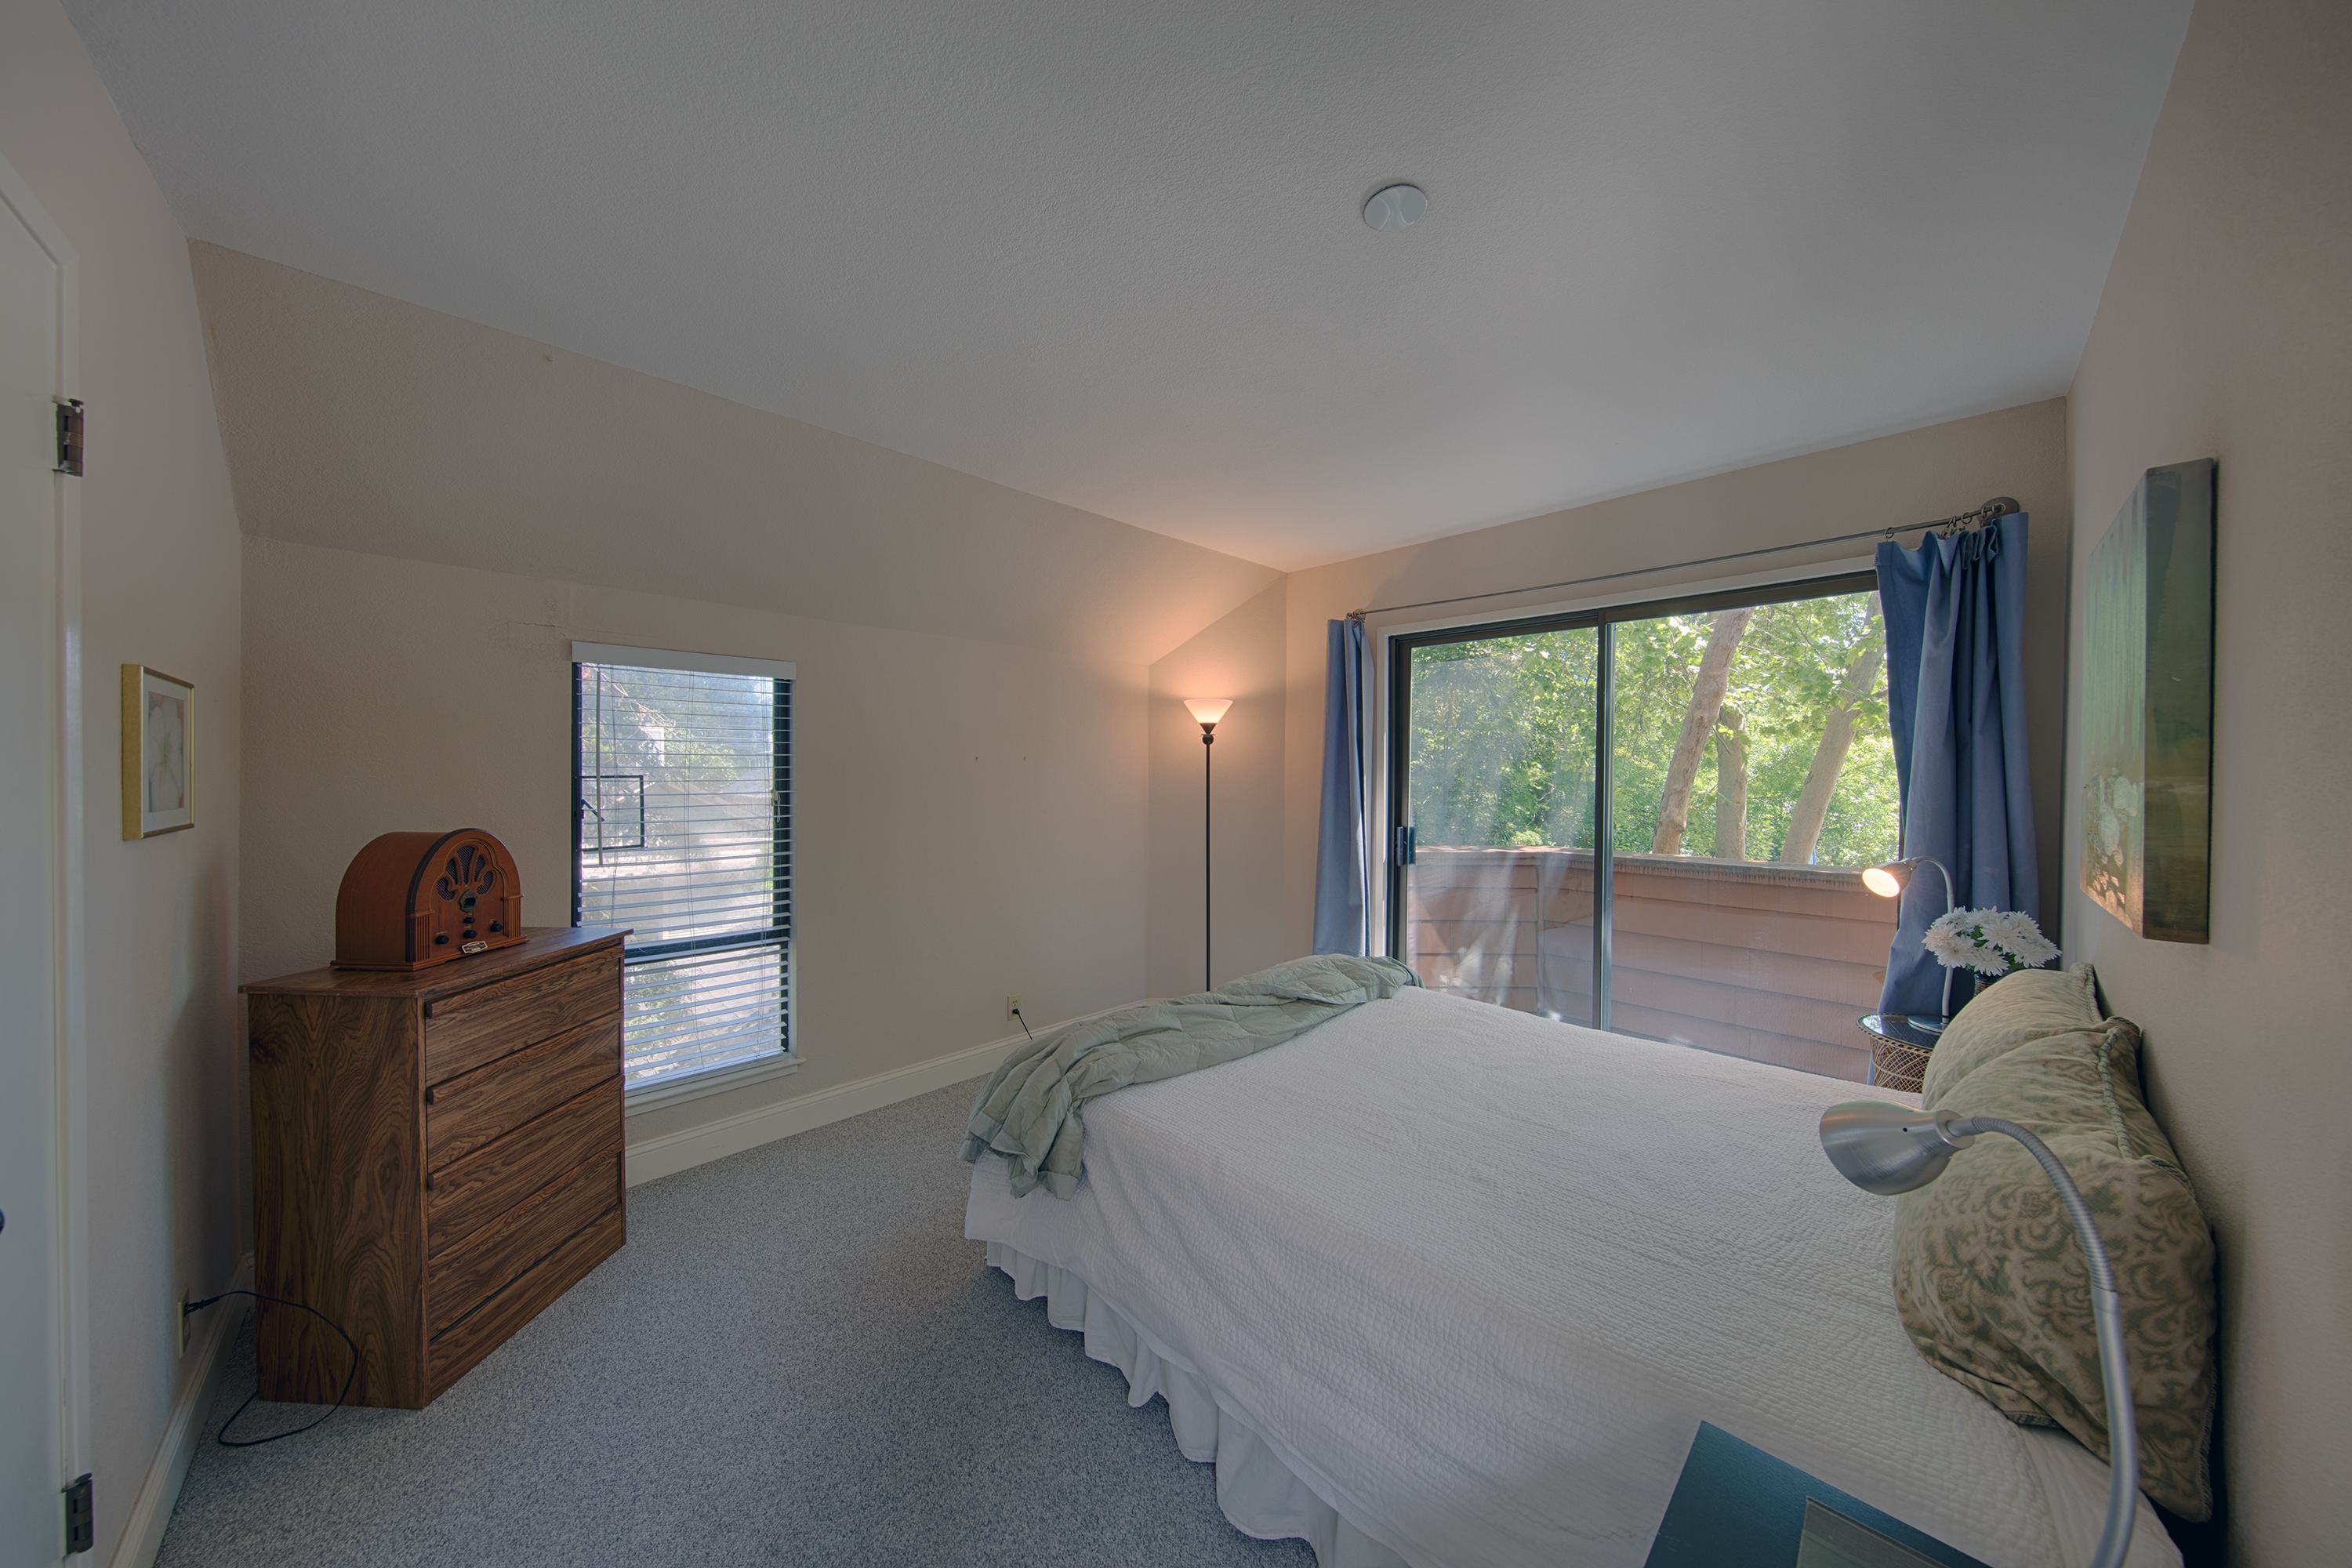 229 High St, Palo Alto 94301 - Guest Suite Bed1 (A)